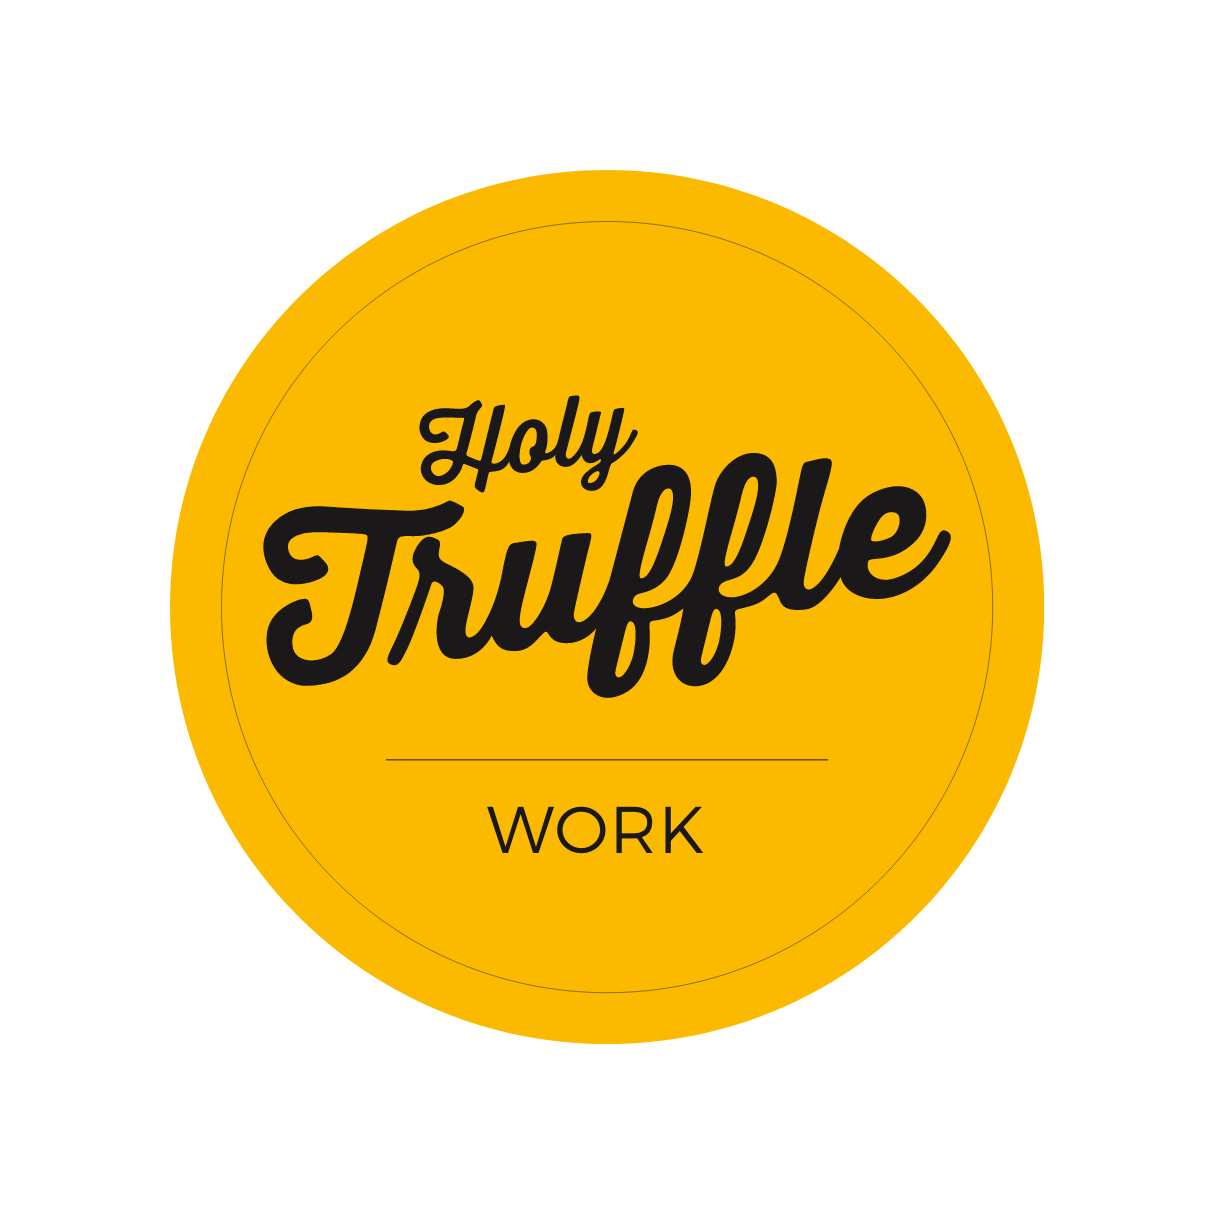 Work_Holy-Truffle_Image-10-min